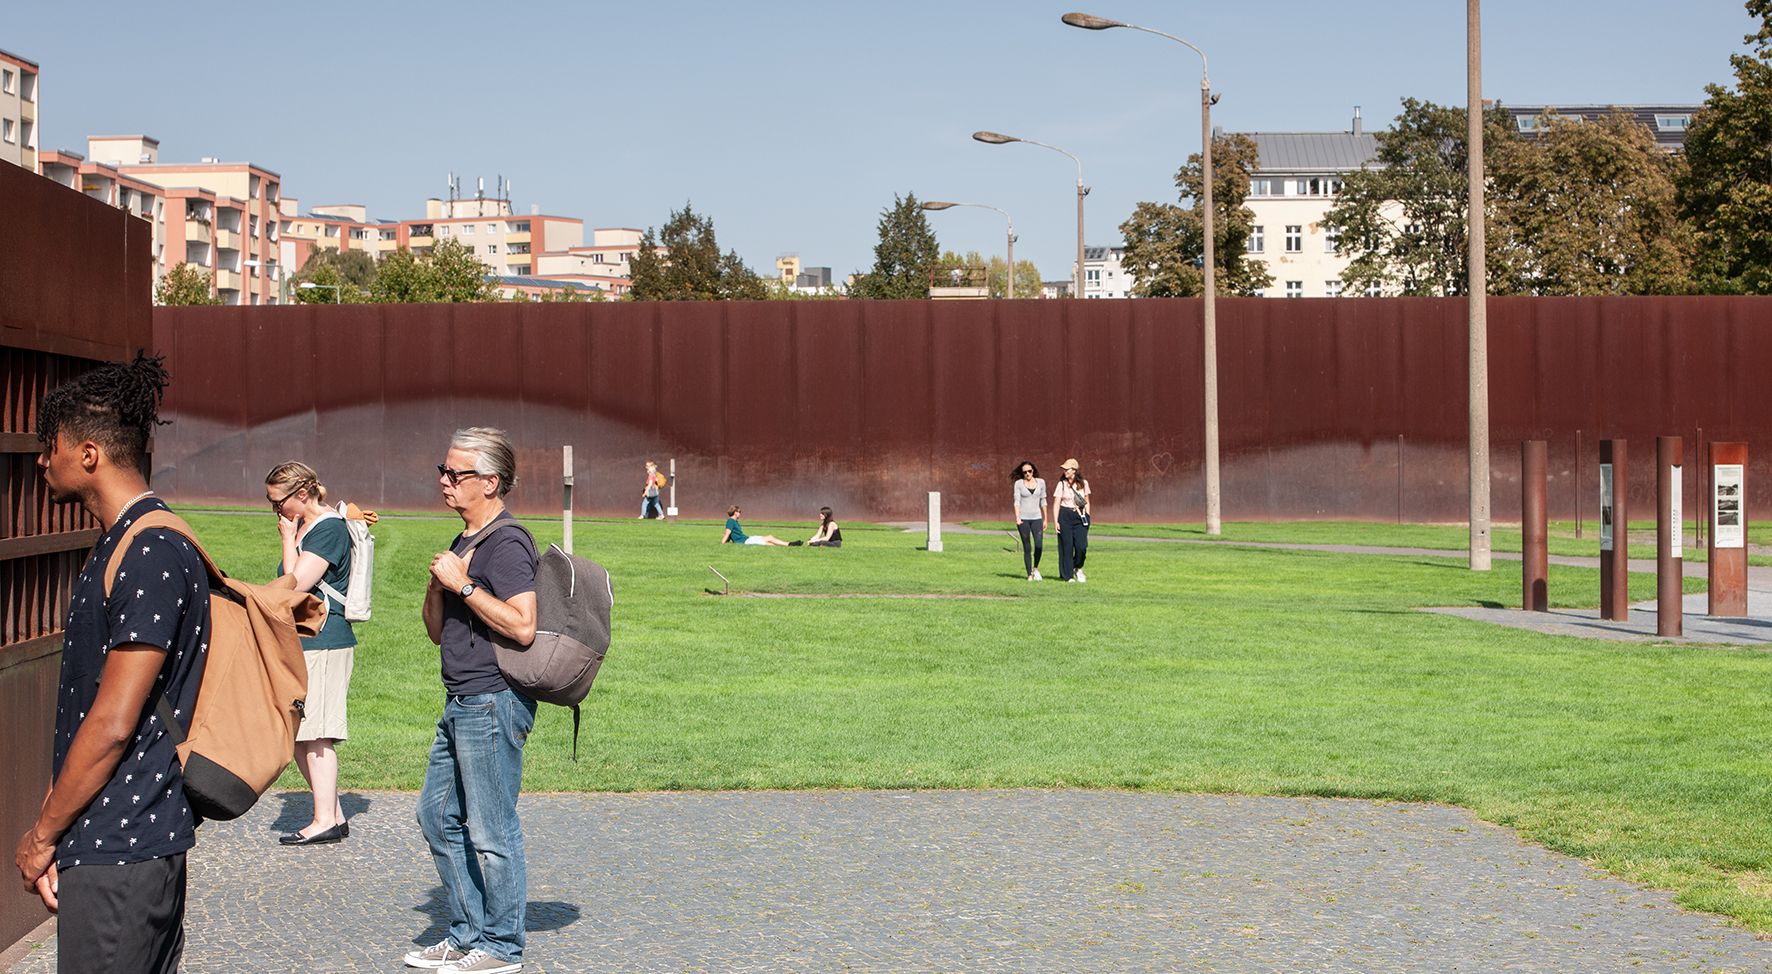 Das Bild zeigt eine Wiese umgeben von einer rostbraunen Mauer. Auf der Wiese sitzen Menschen, spazieren darüber. Andere Menschen schauen auf die Mauer.